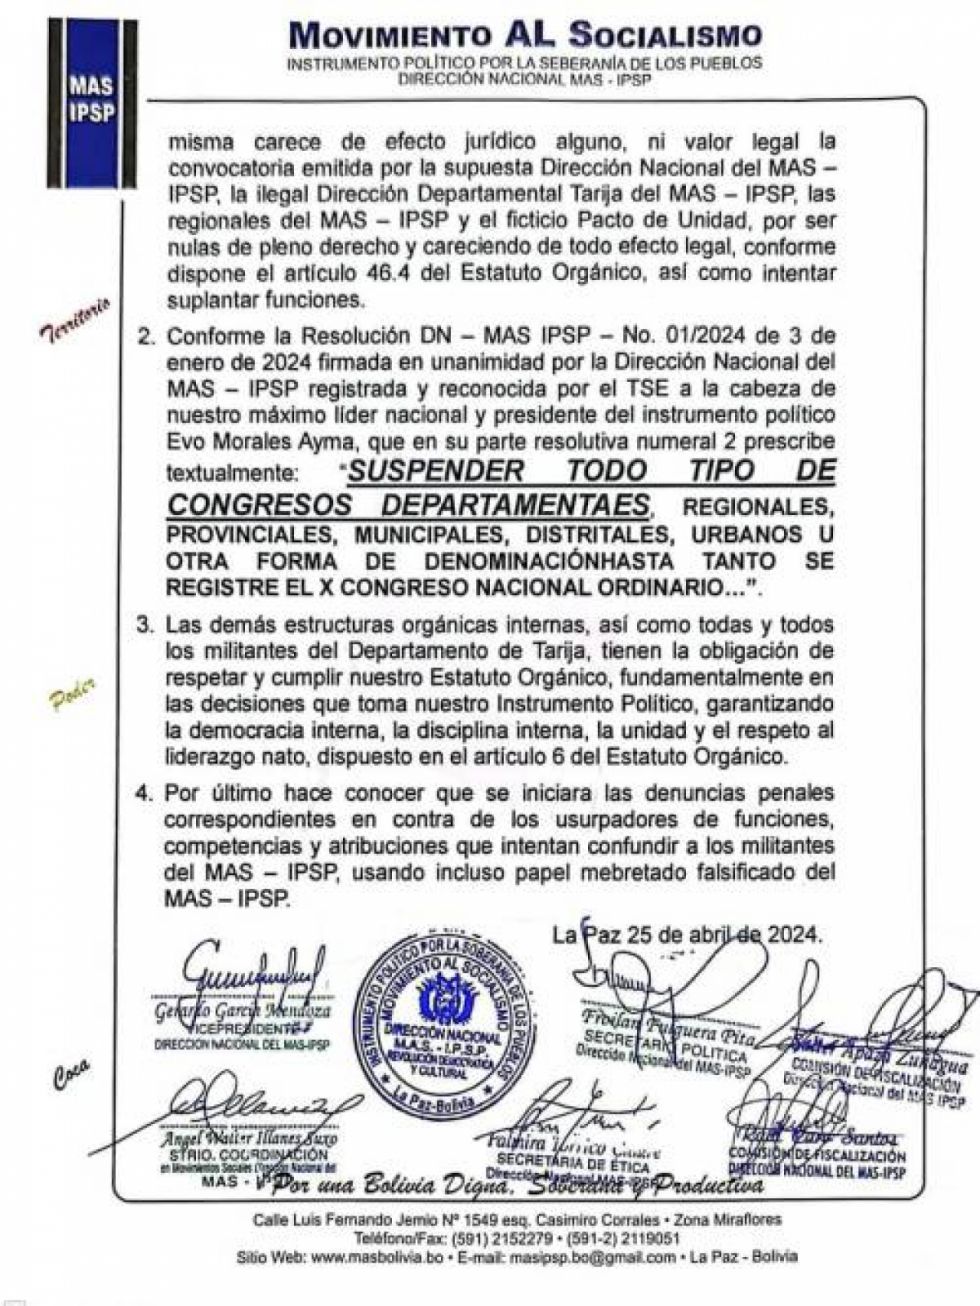 Dirigencia del MAS evista declara ilegal el congreso departamental en Tarija